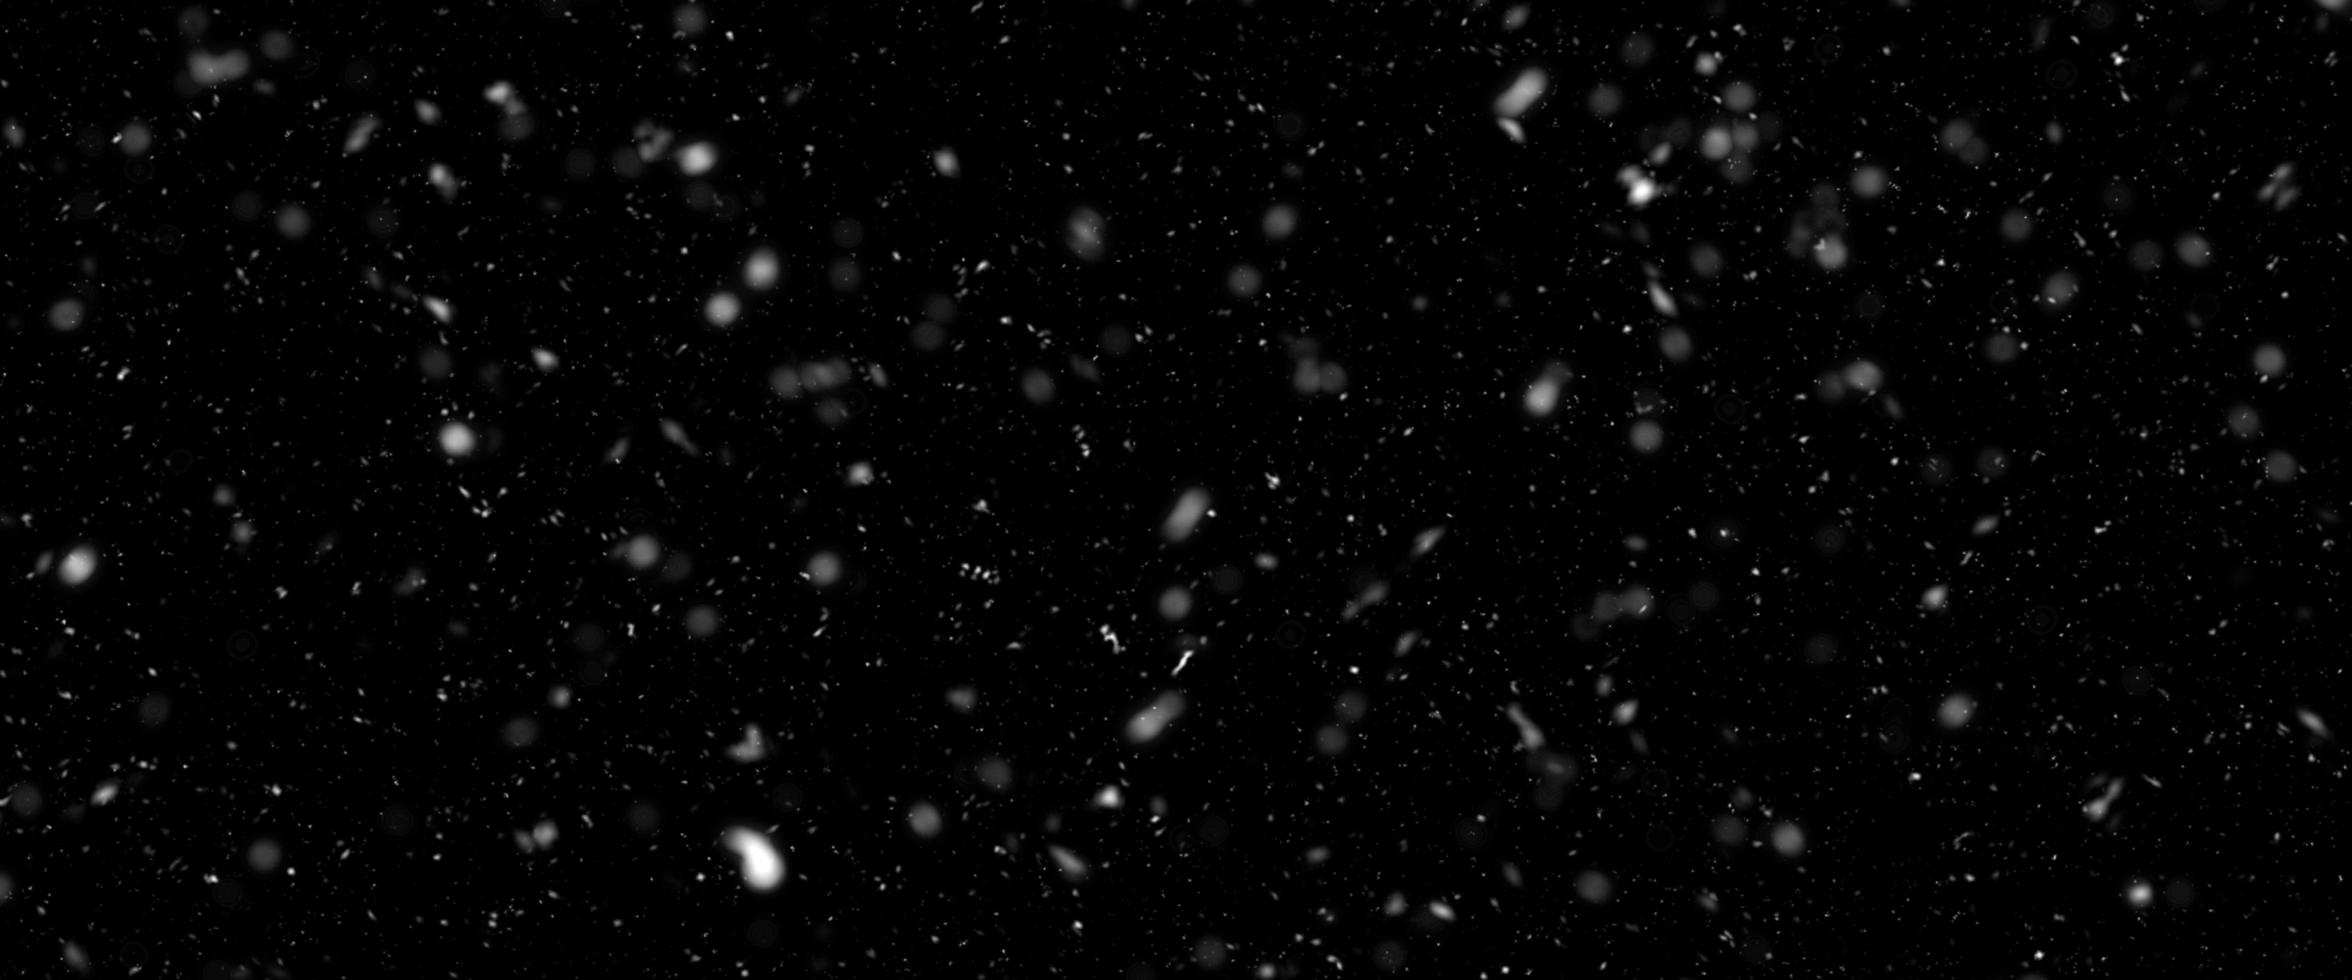 chute de neige isolée sur fond noir. chute de neige la nuit. lumières bokeh sur fond noir, flocons de neige volants dans les airs. temps d'hiver. texture de superposition. photo